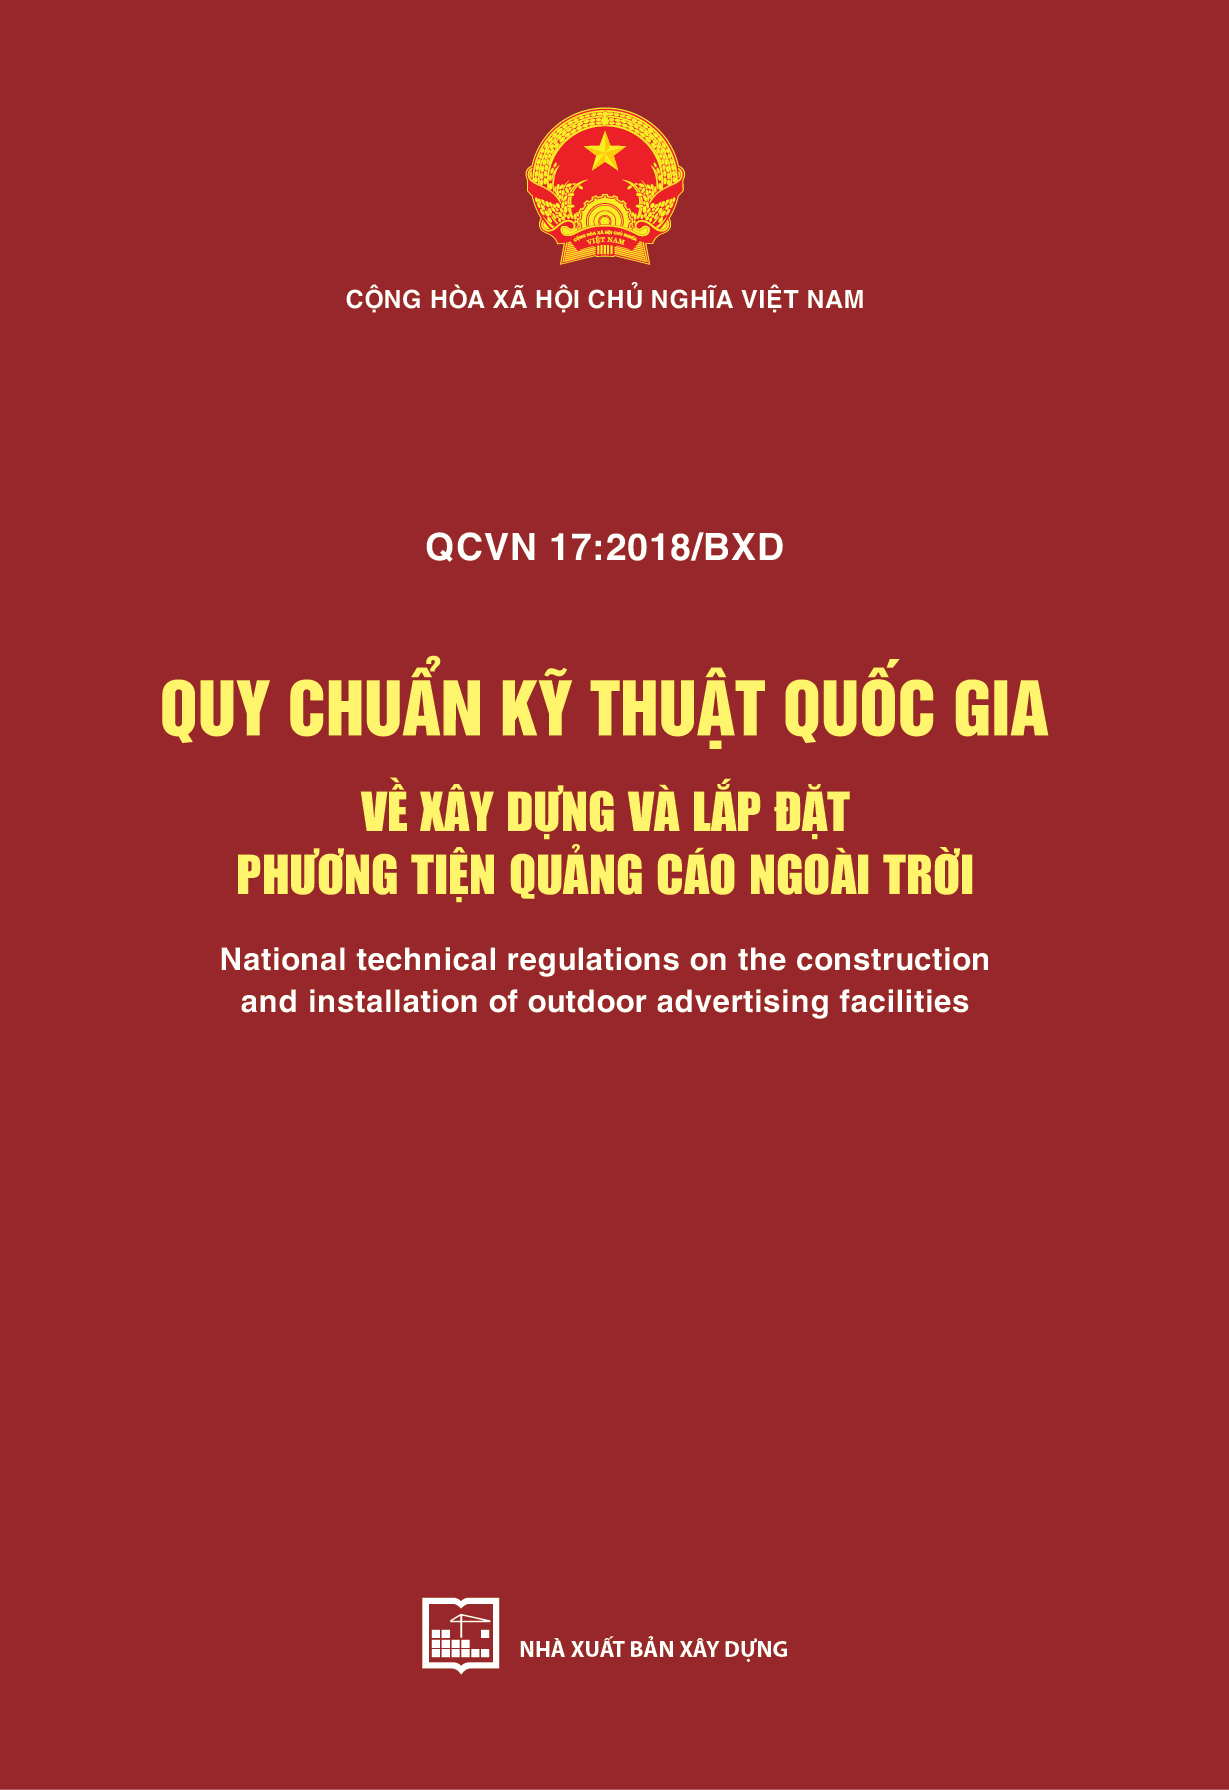 QCVN 17:2018/BXD Quy chuẩn kỹ thuật quốc gia về xây dựng và lắp đặt phương tiện quảng cáo ngoài trời